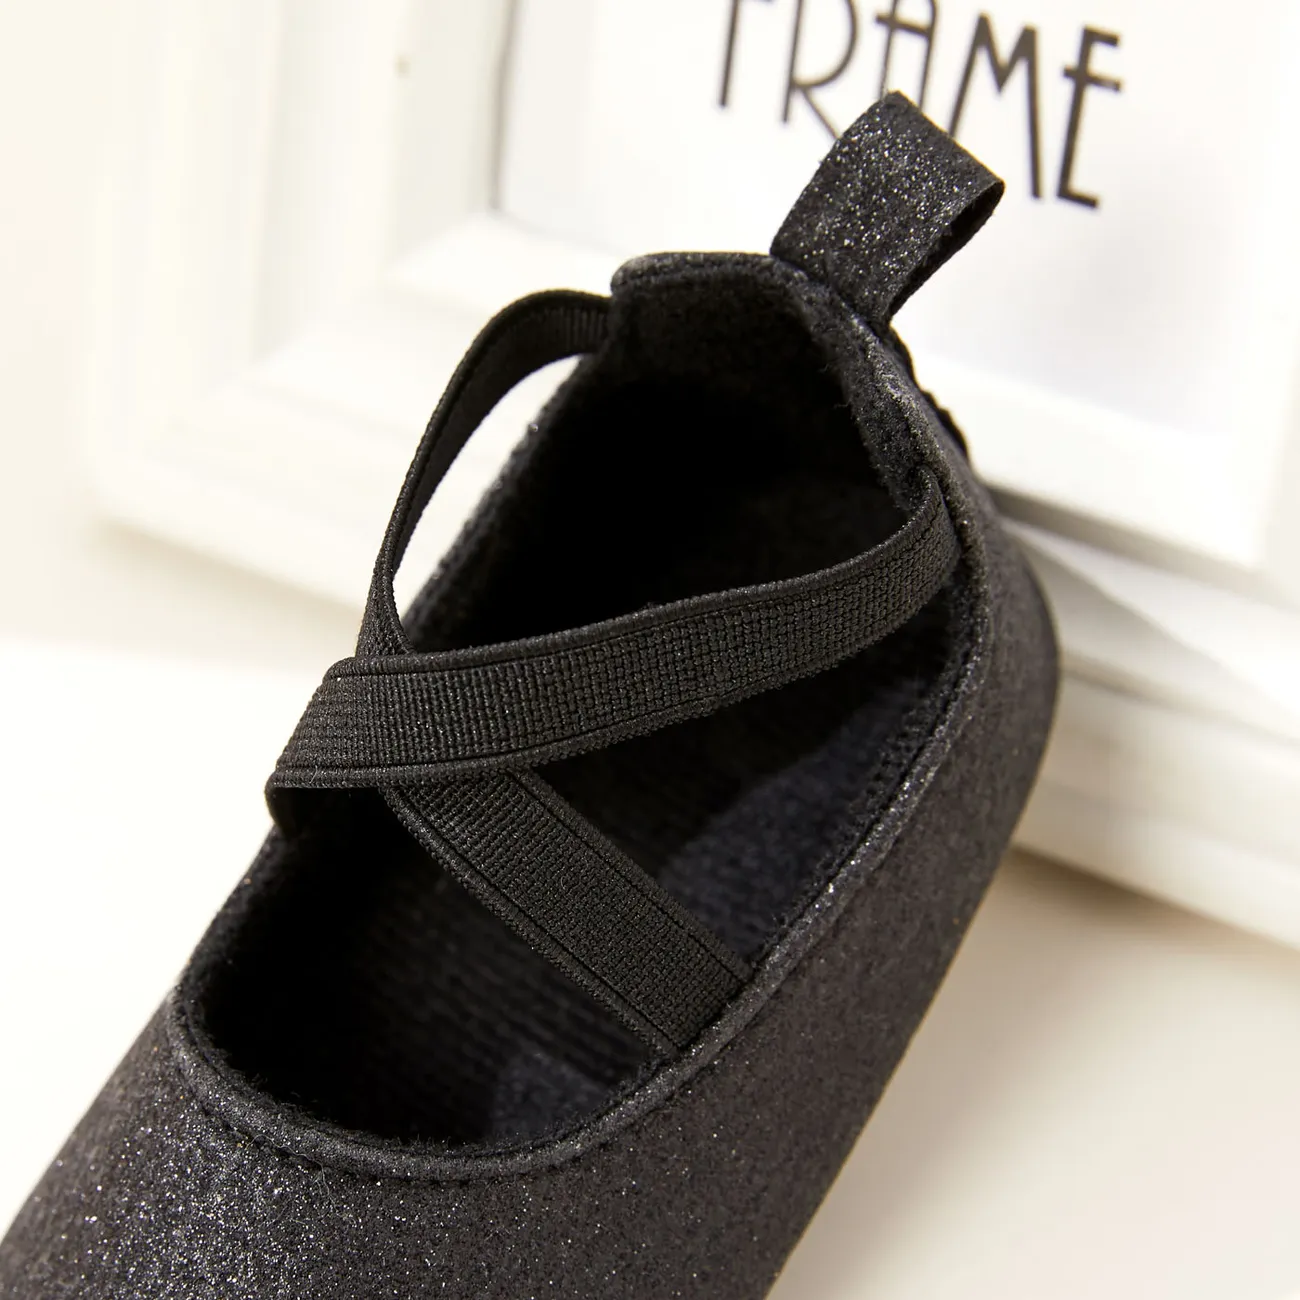 Baby / Toddler Solid Color Crisscross Slip-on Prewalker Shoes Black big image 1